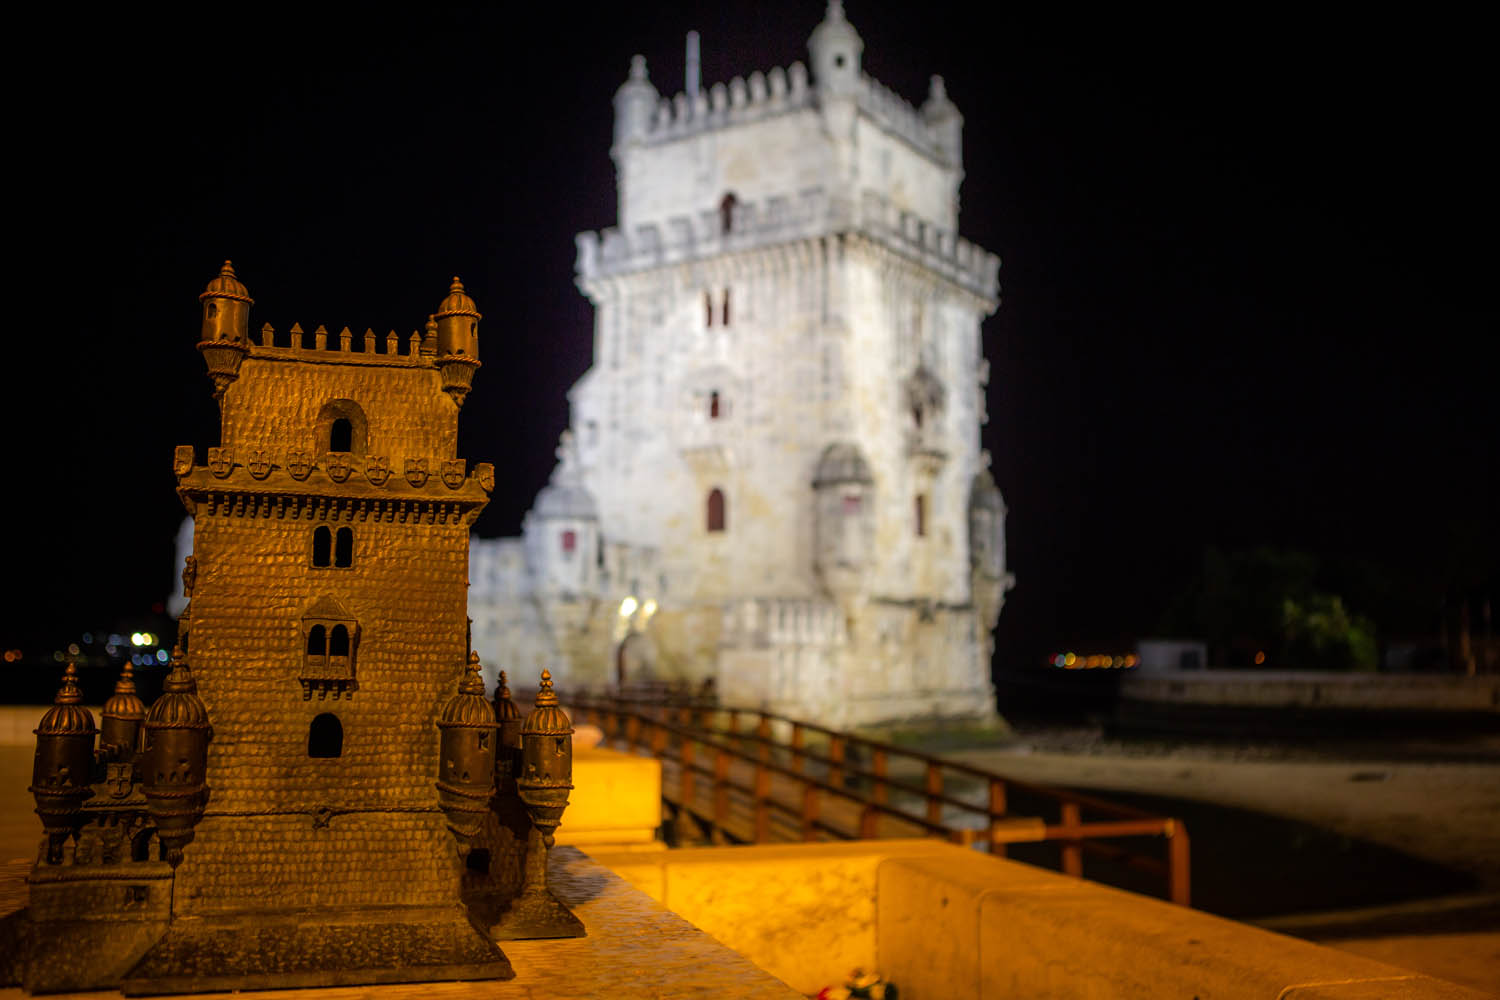 Torre de Belém, goed verlicht in het donker. Op de voorgrond een klein model van de toren, zodat je kan voelen hoe hij eruit ziet.